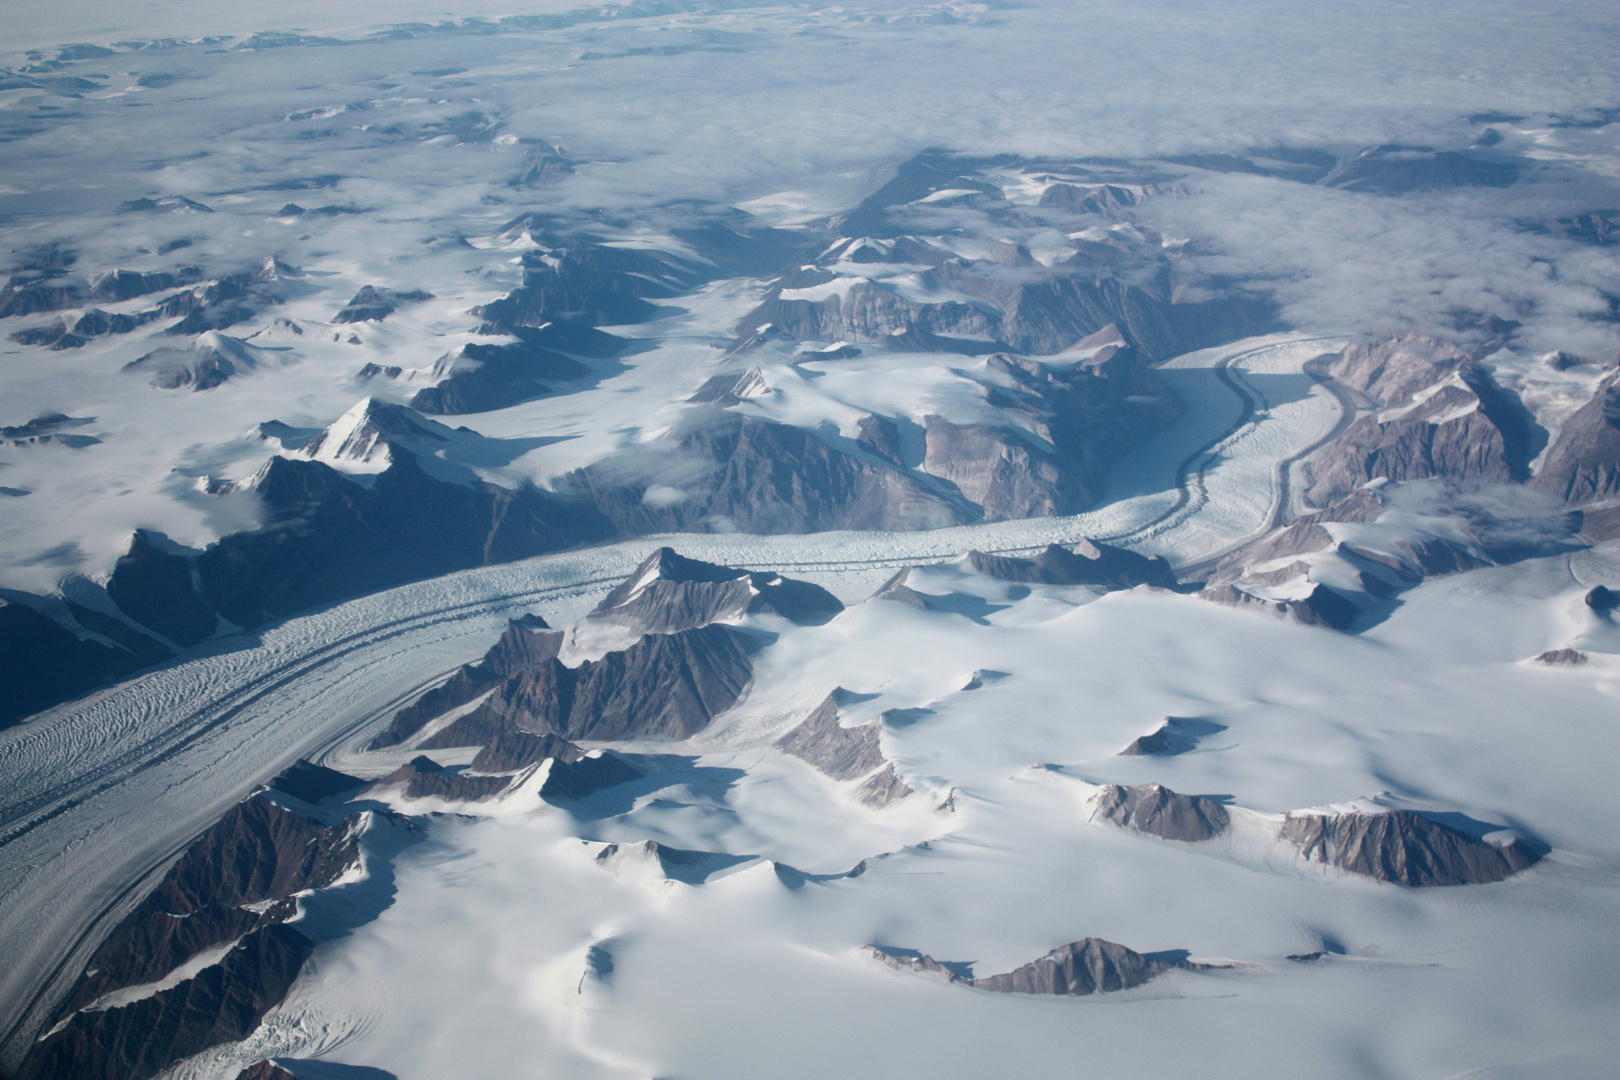 Überflug über Grönland.....